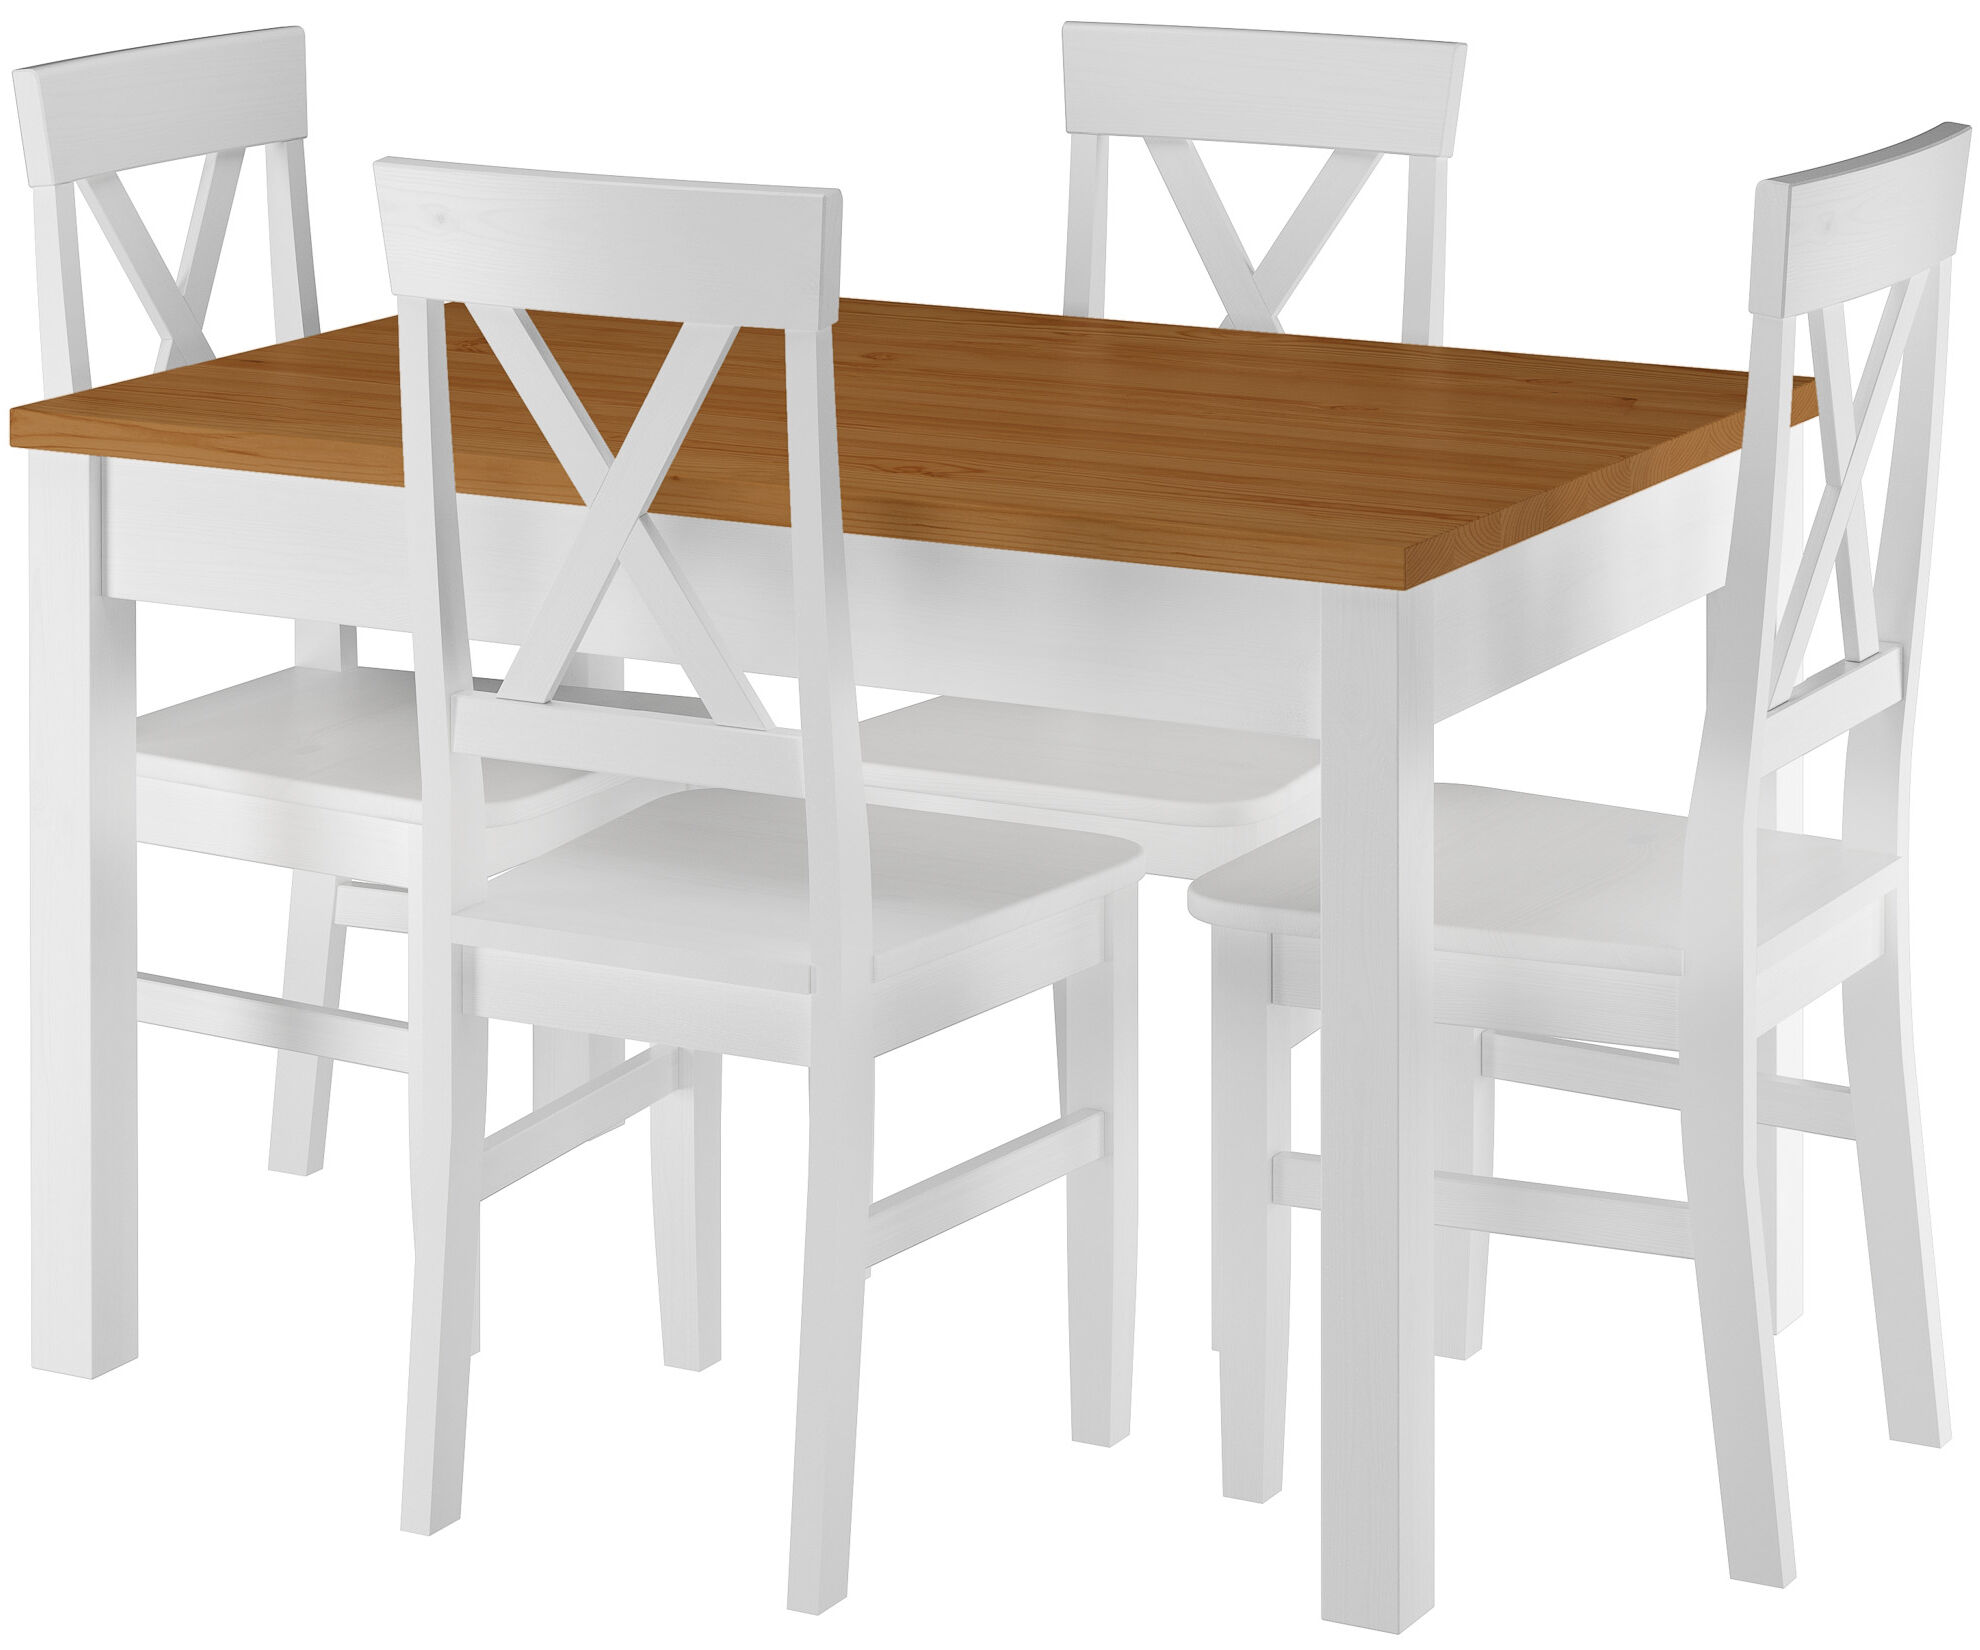 Essgruppe aus massiver Kiefer, Stuhlmodell 23, waschweiß lackiert, Tischplatte eiche gebeizt, 80 x 120 cm, Tischbeine Glatt